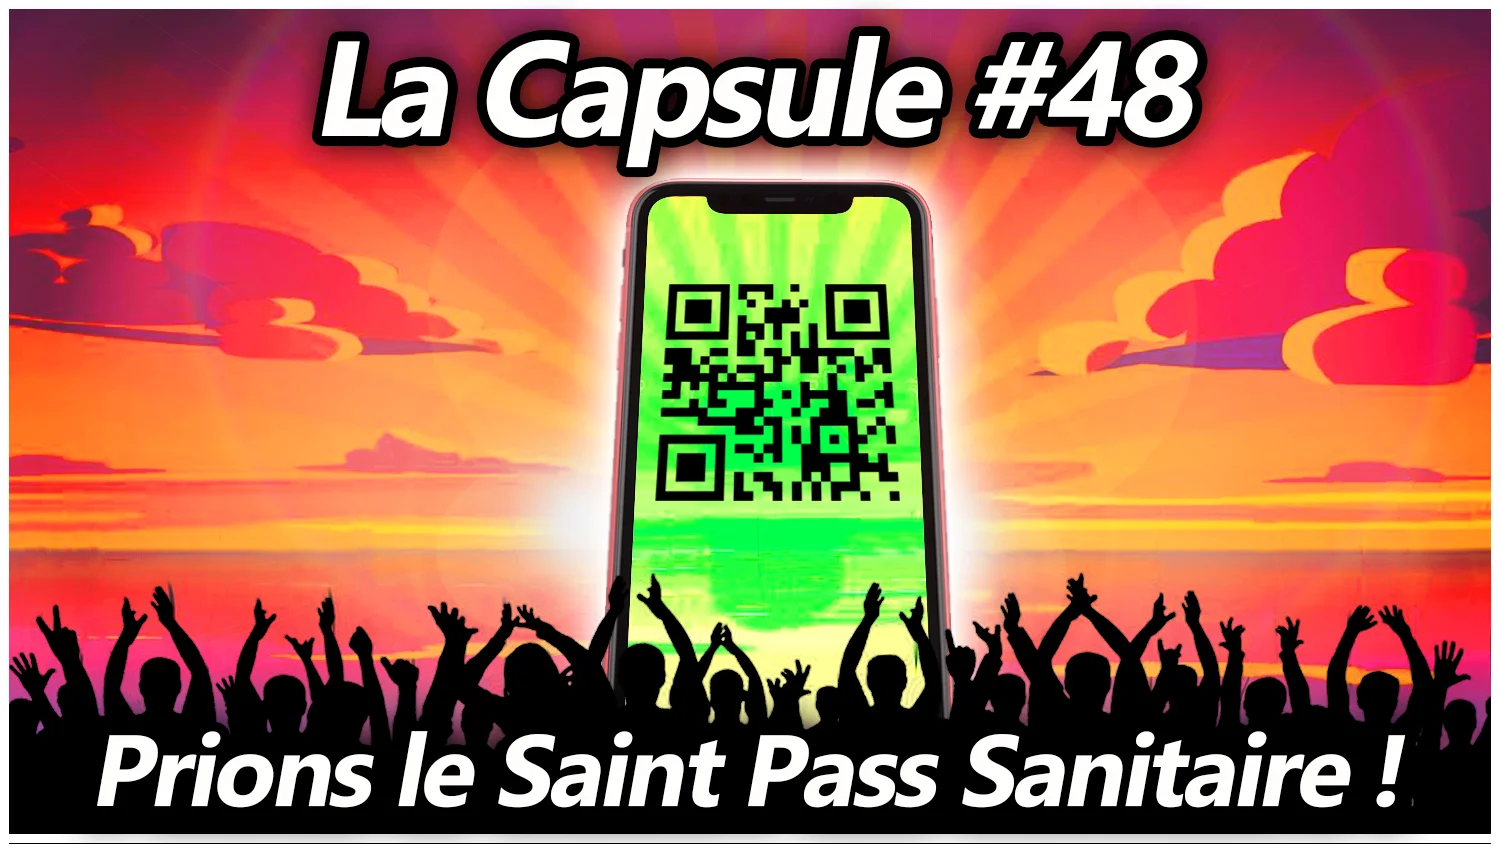 La Capsule #48 – Prions le Saint Pass Sanitaire !